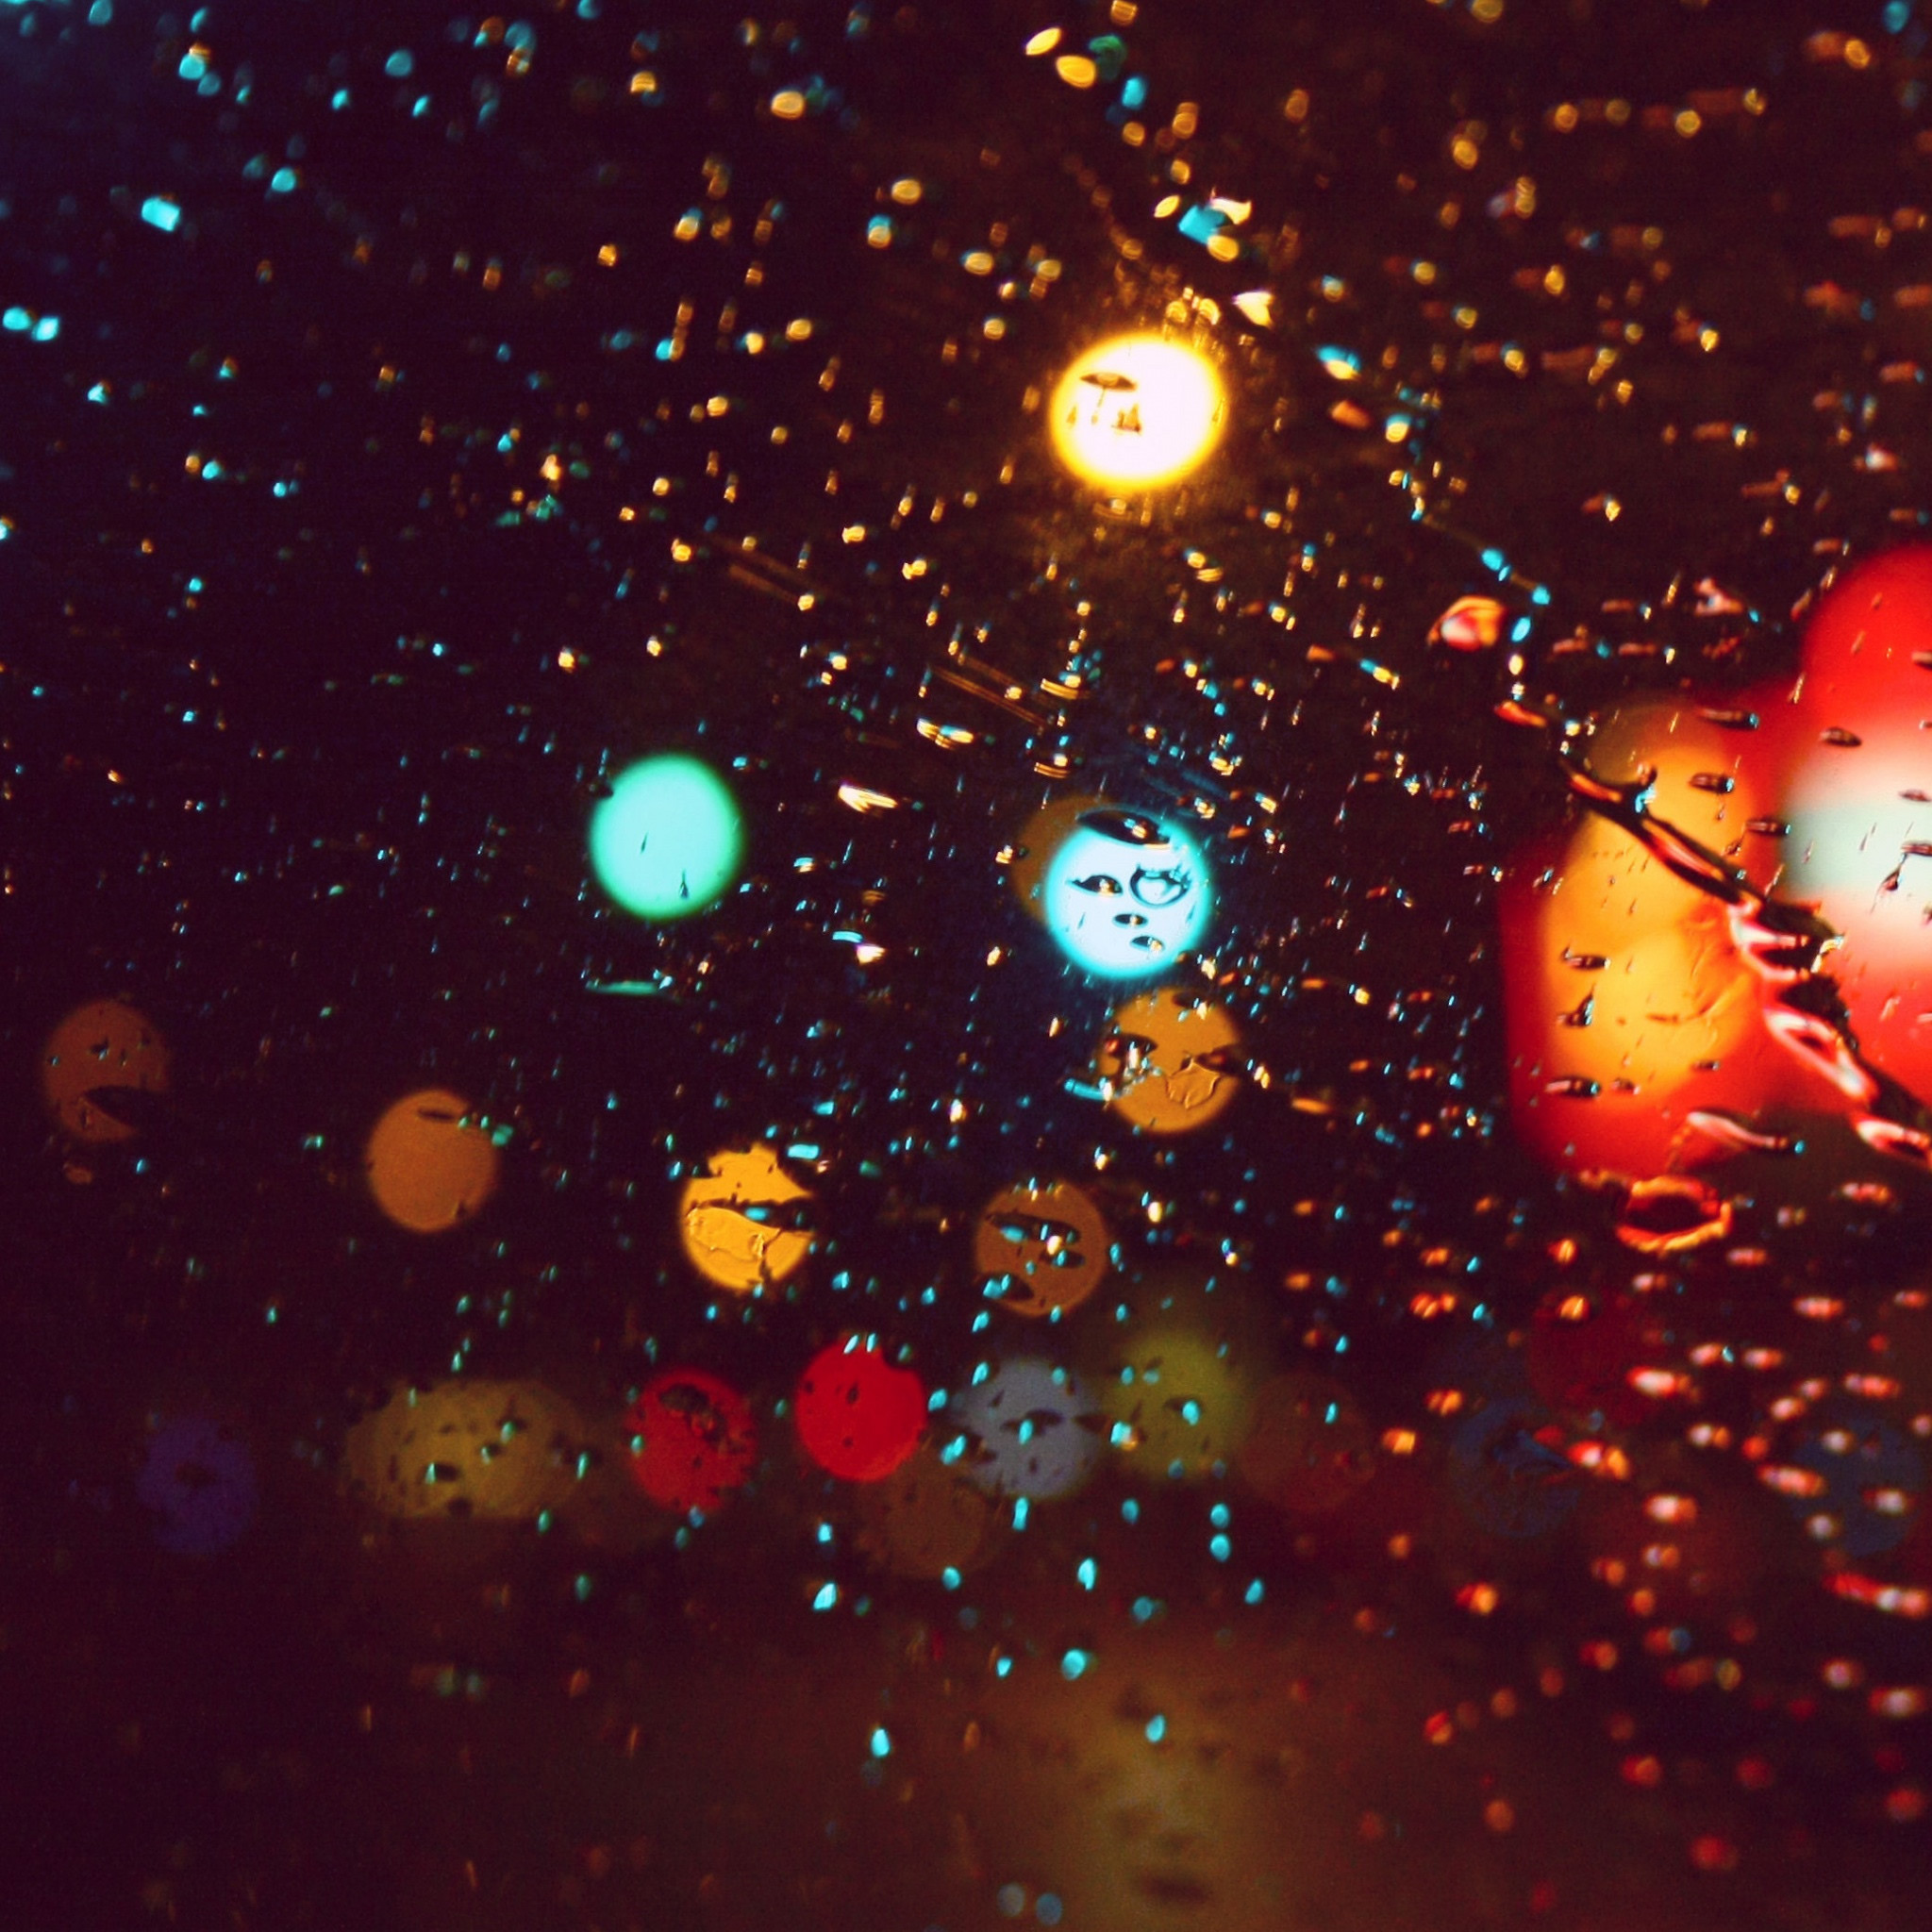 雨の夜景 Ipad タブレット壁紙ギャラリー